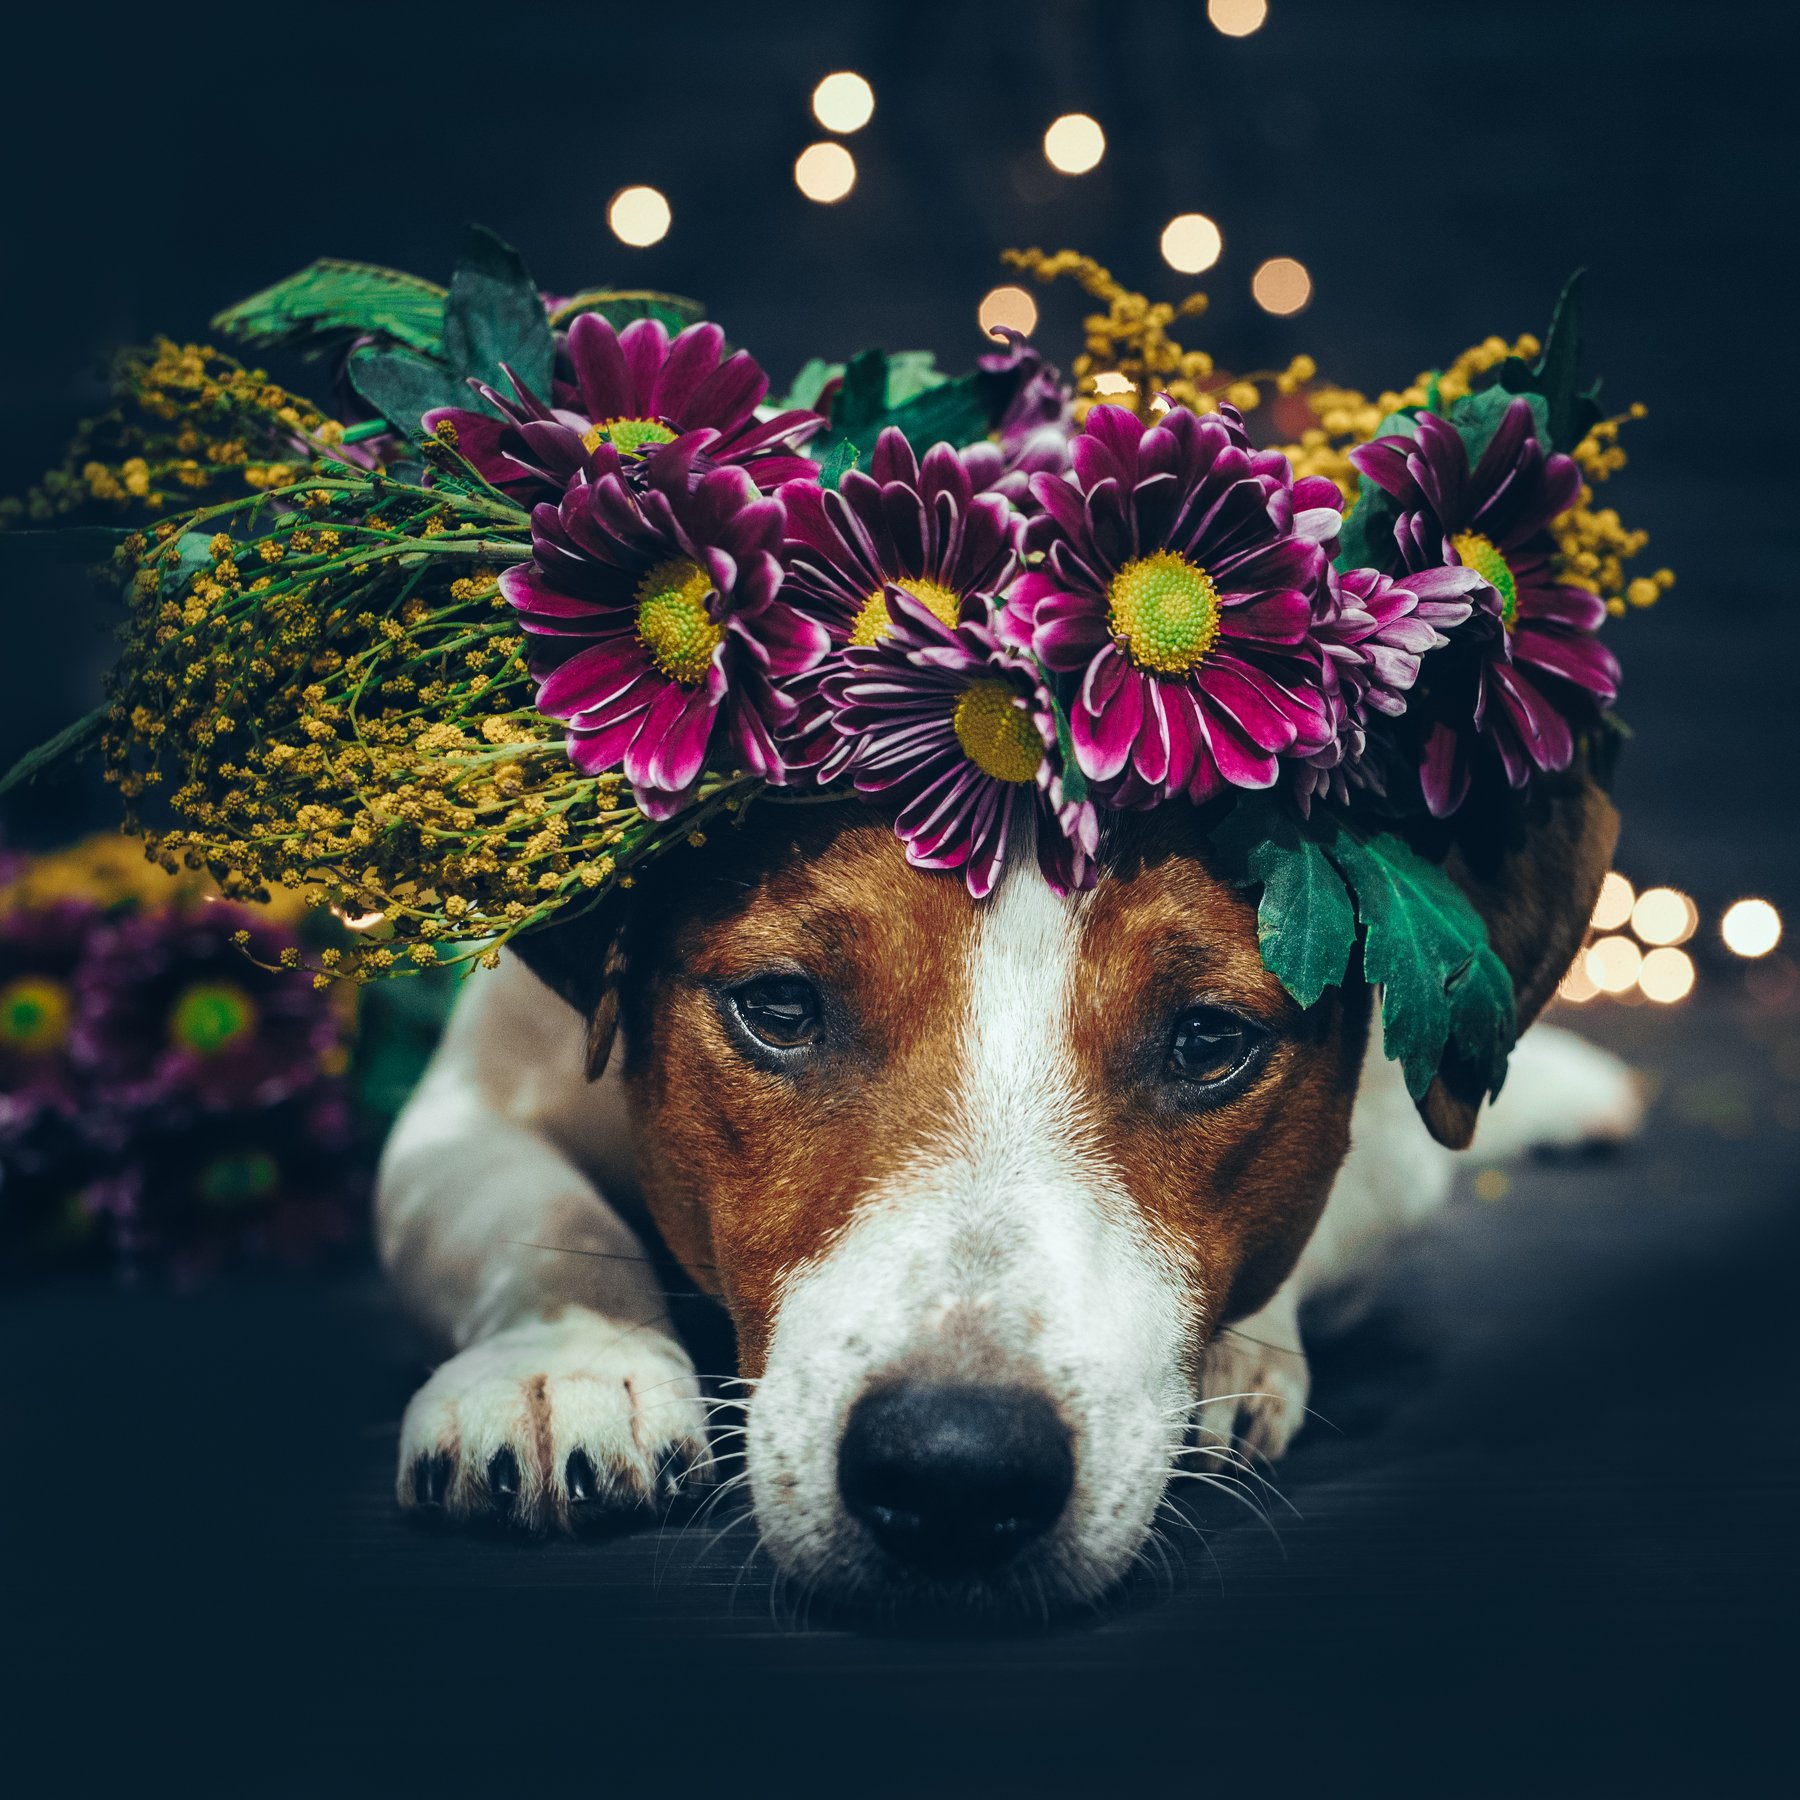 джек рассел терьер, собака, dog, цветы, веннок, Irina